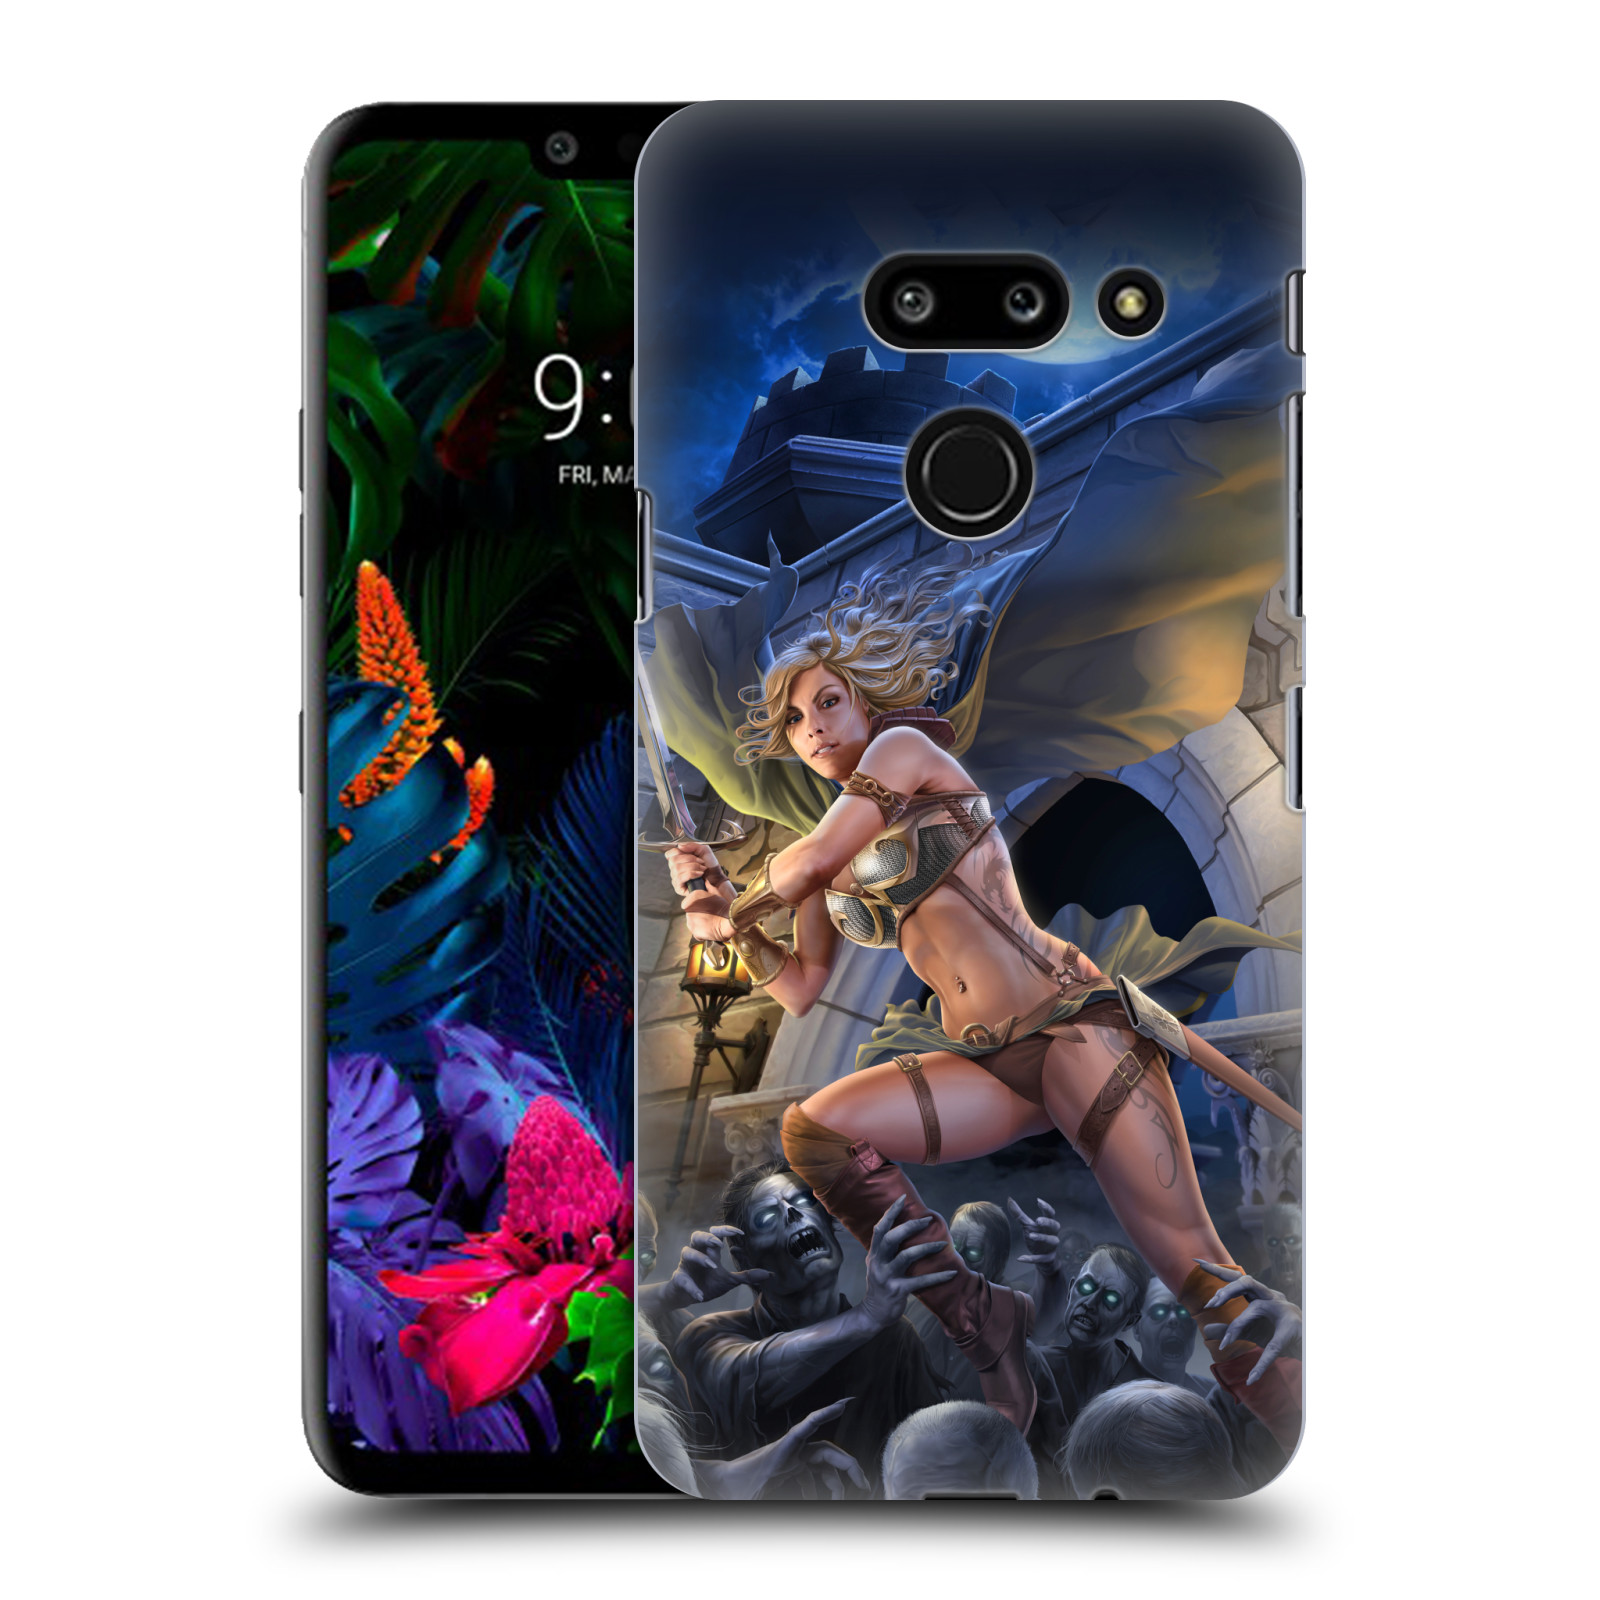 Pouzdro na mobil LG G8 ThinQ - HEAD CASE - Fantasy kresby Tom Wood - Princezna bojovnice a zombies